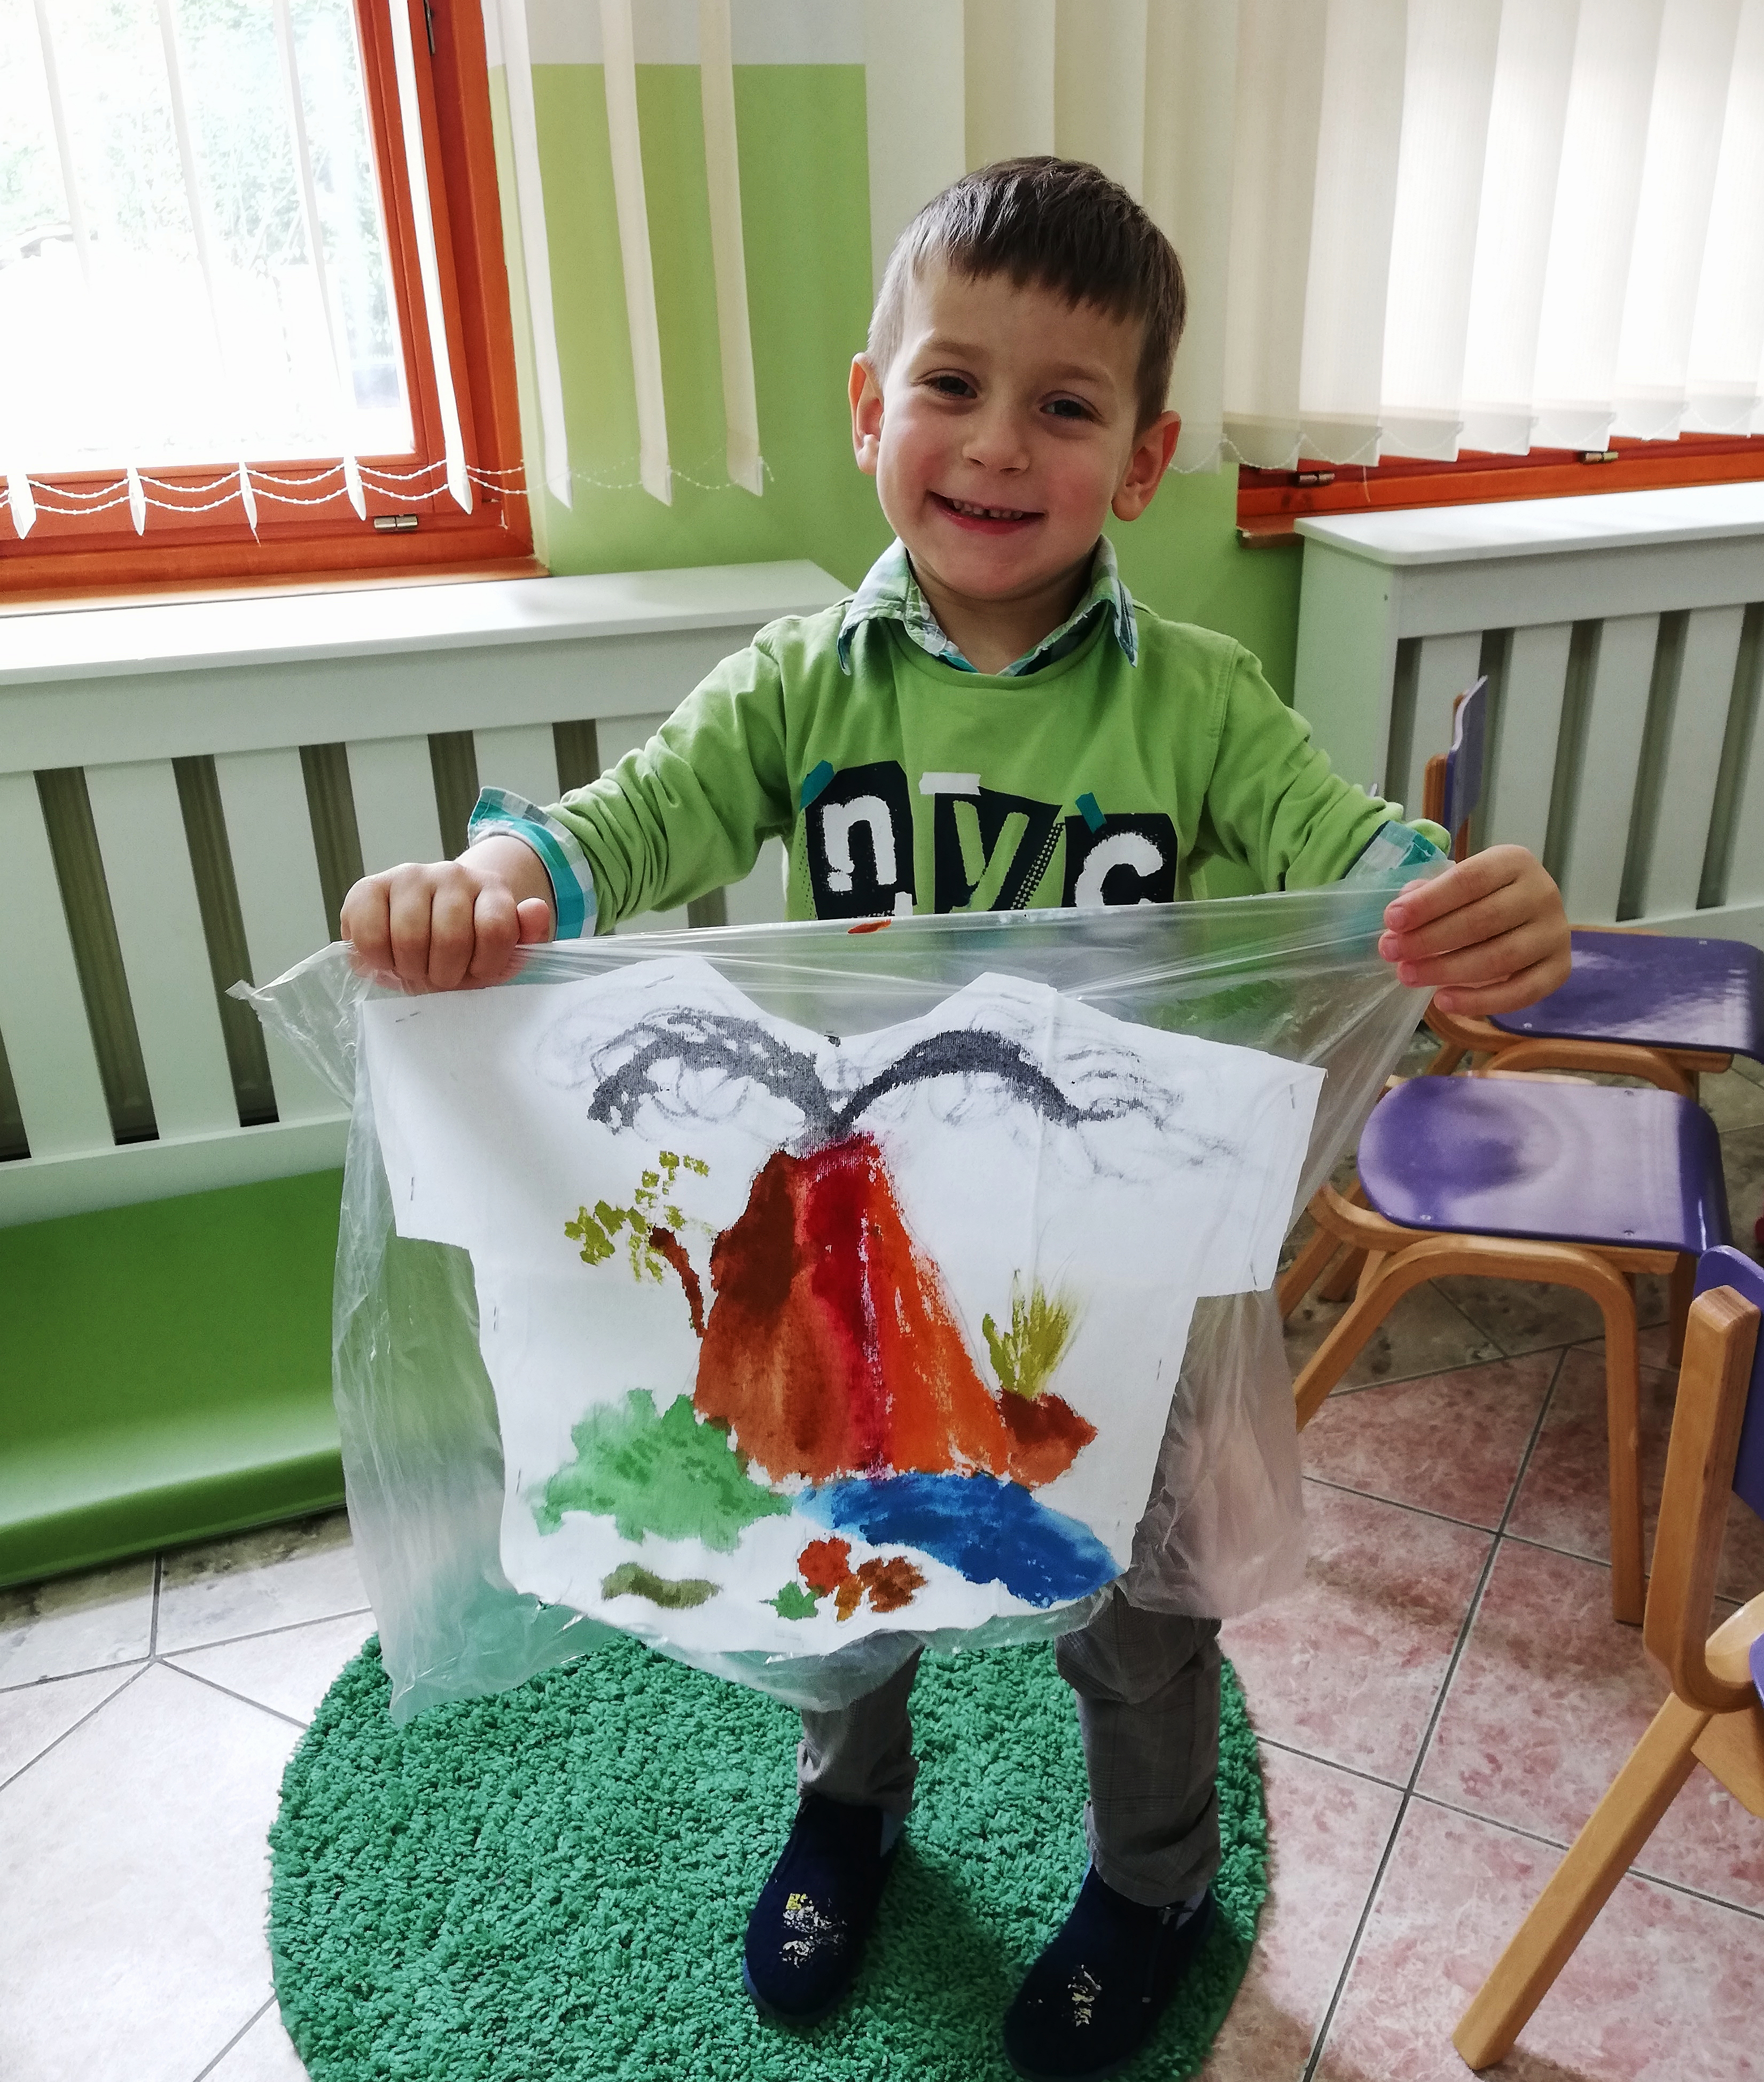  Lazar, koji će uskoro napuniti 6 godina, nam je ponosno pokazao svoje umetničko delo.